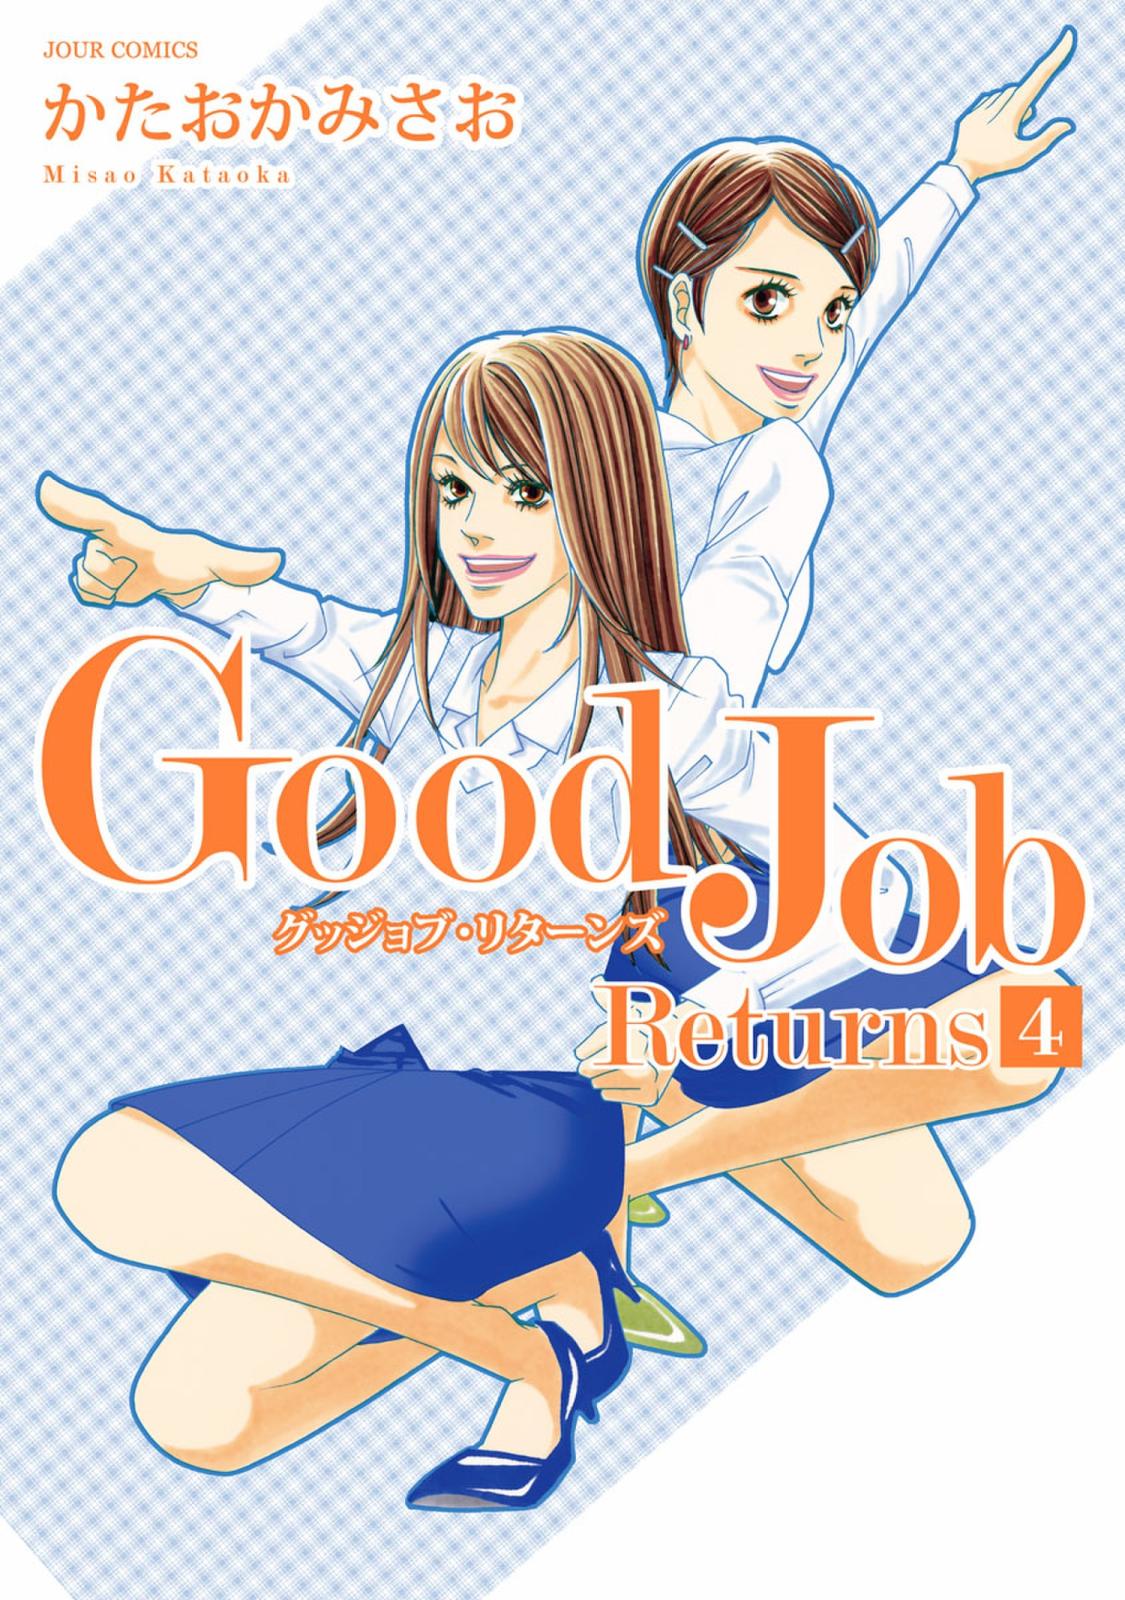 Good Job Returns 漫画 コミックを読むならmusic Jp